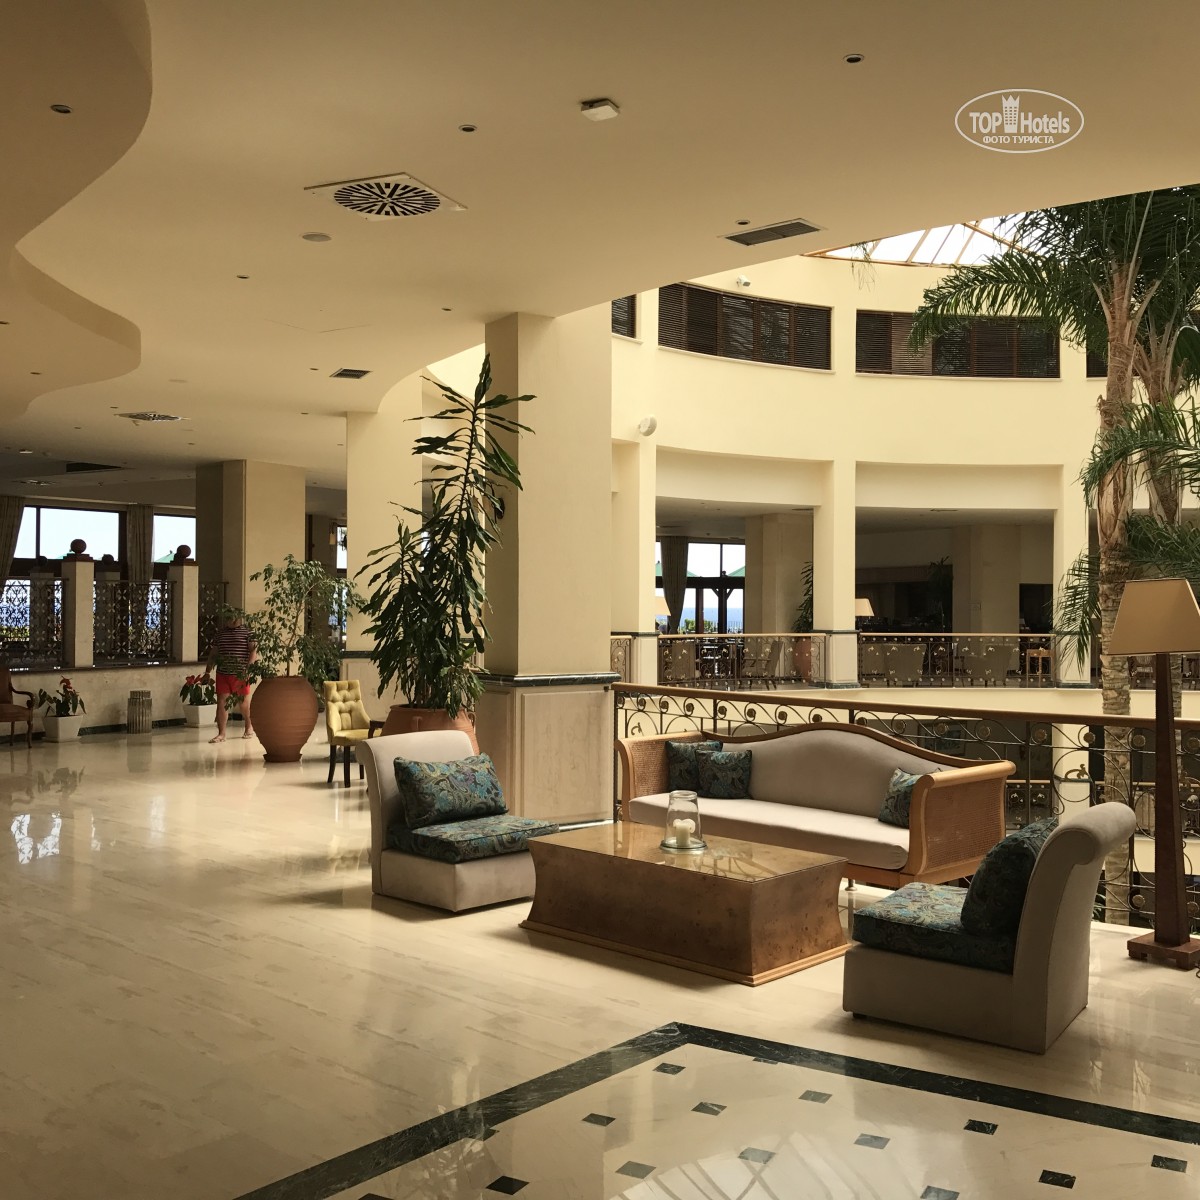 Atlantica Imperial Resort, Родос (Средиземное побережье)